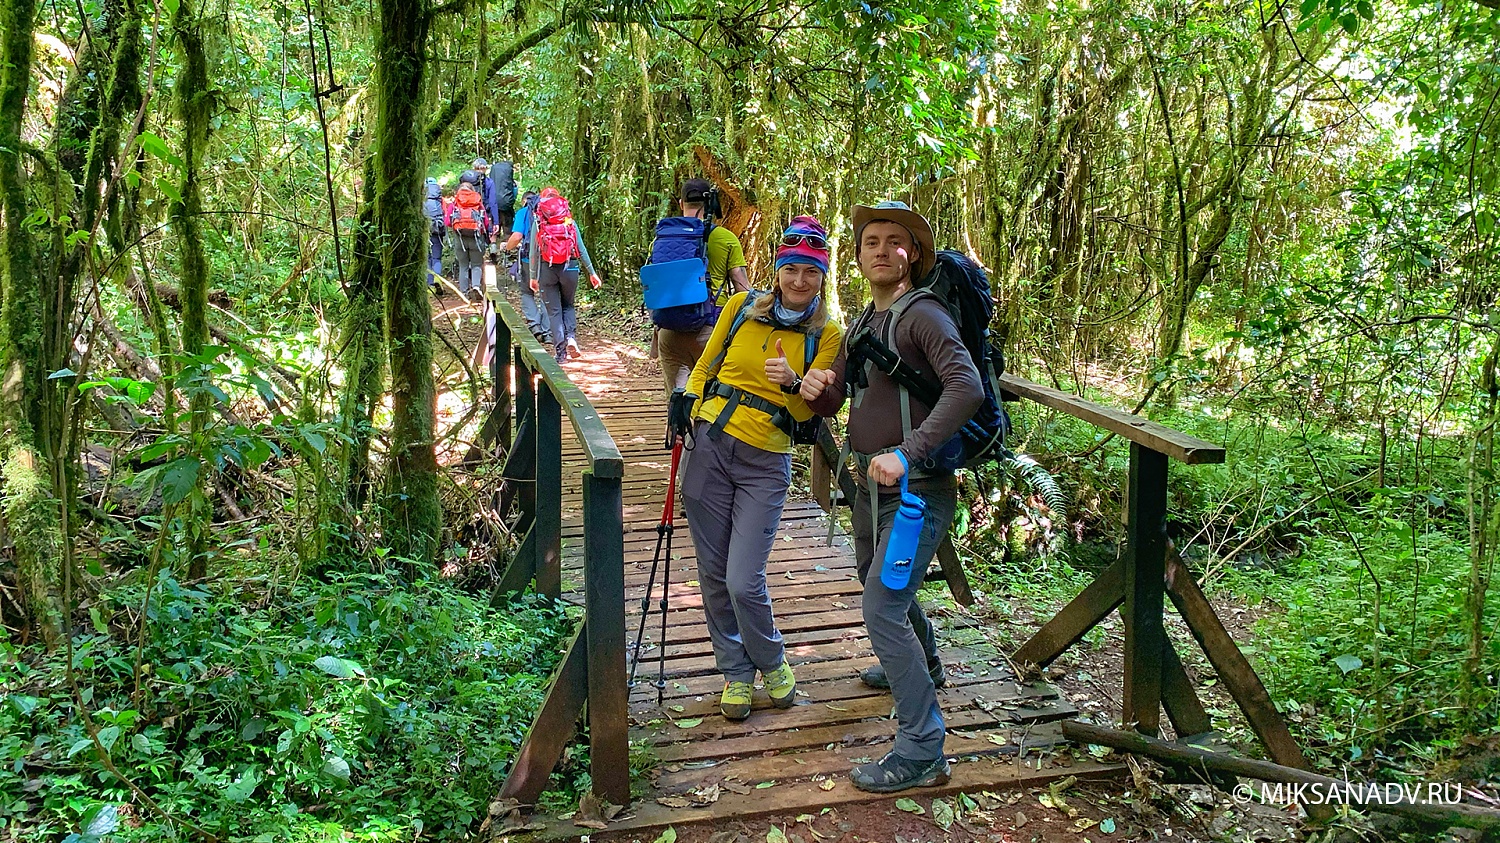 Восхождение на Килиманджаро 5895 м + сафари два дня